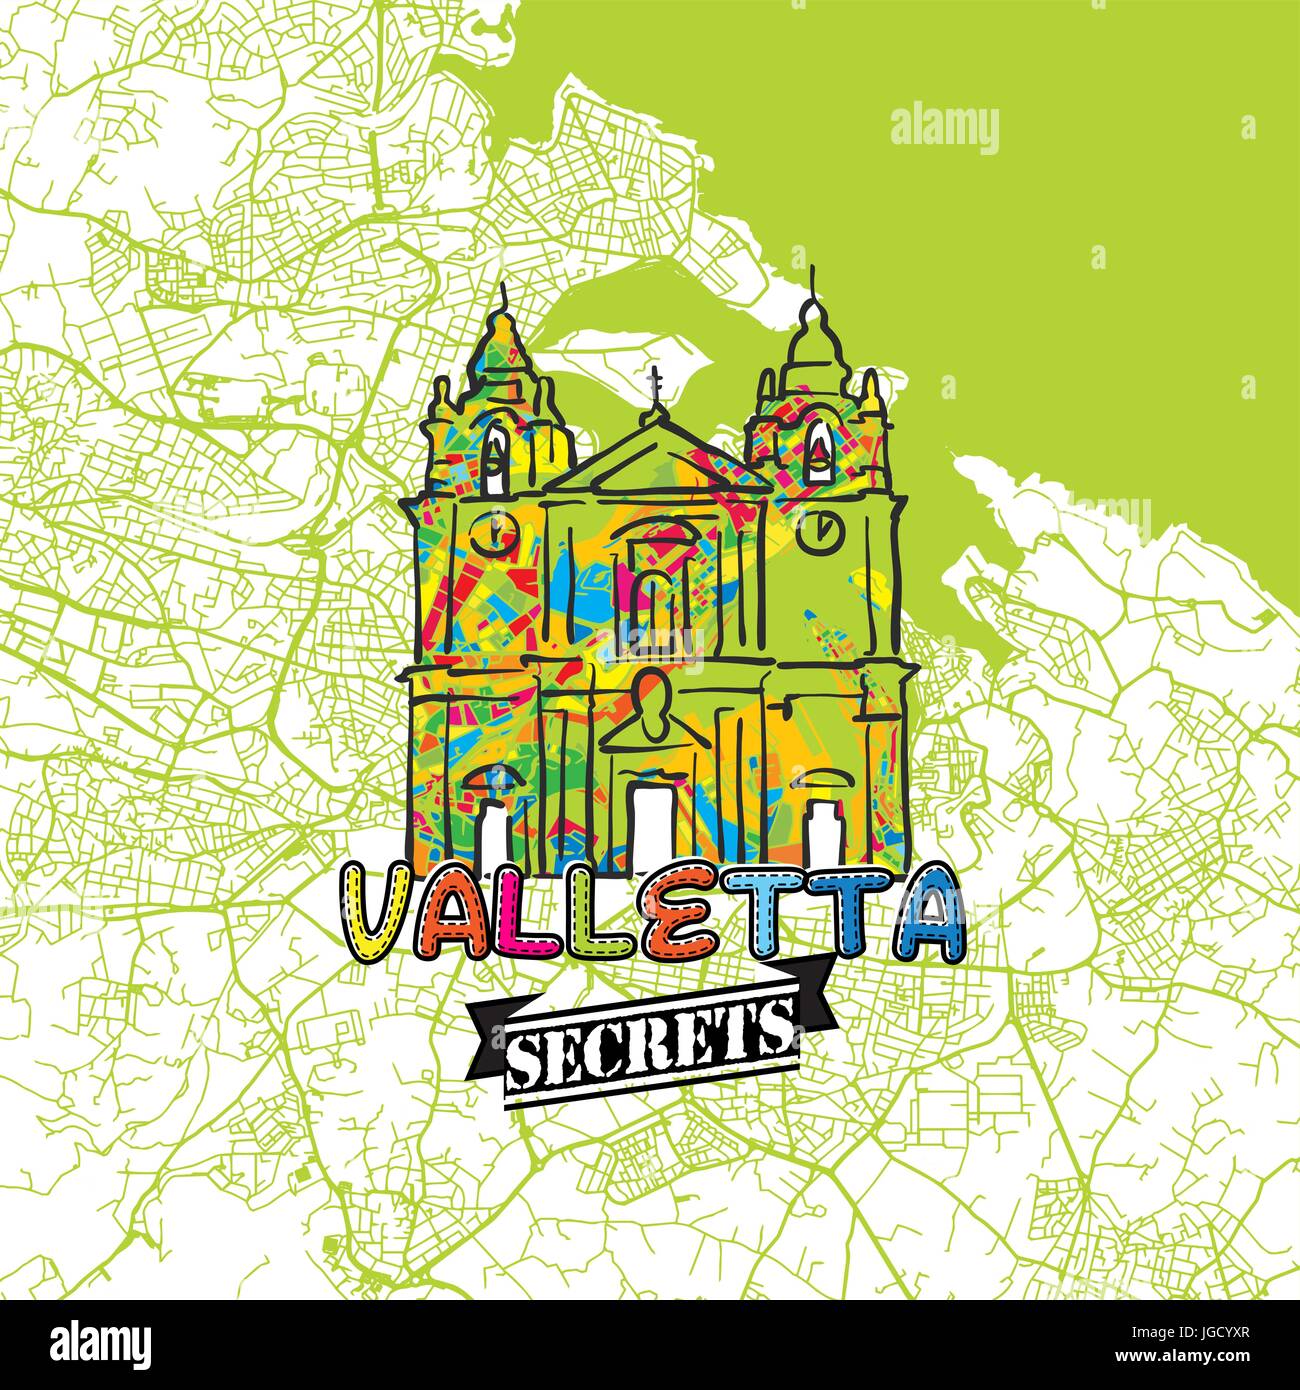 Valletta reisen Geheimnisse Art Map für die Zuordnung von Experten und Reiseführer. Handgemachte Stadt Logo, Typo-Abzeichen und Hand gezeichnete Vektor-Bild an der Spitze sind gruppiert eine Stock Vektor